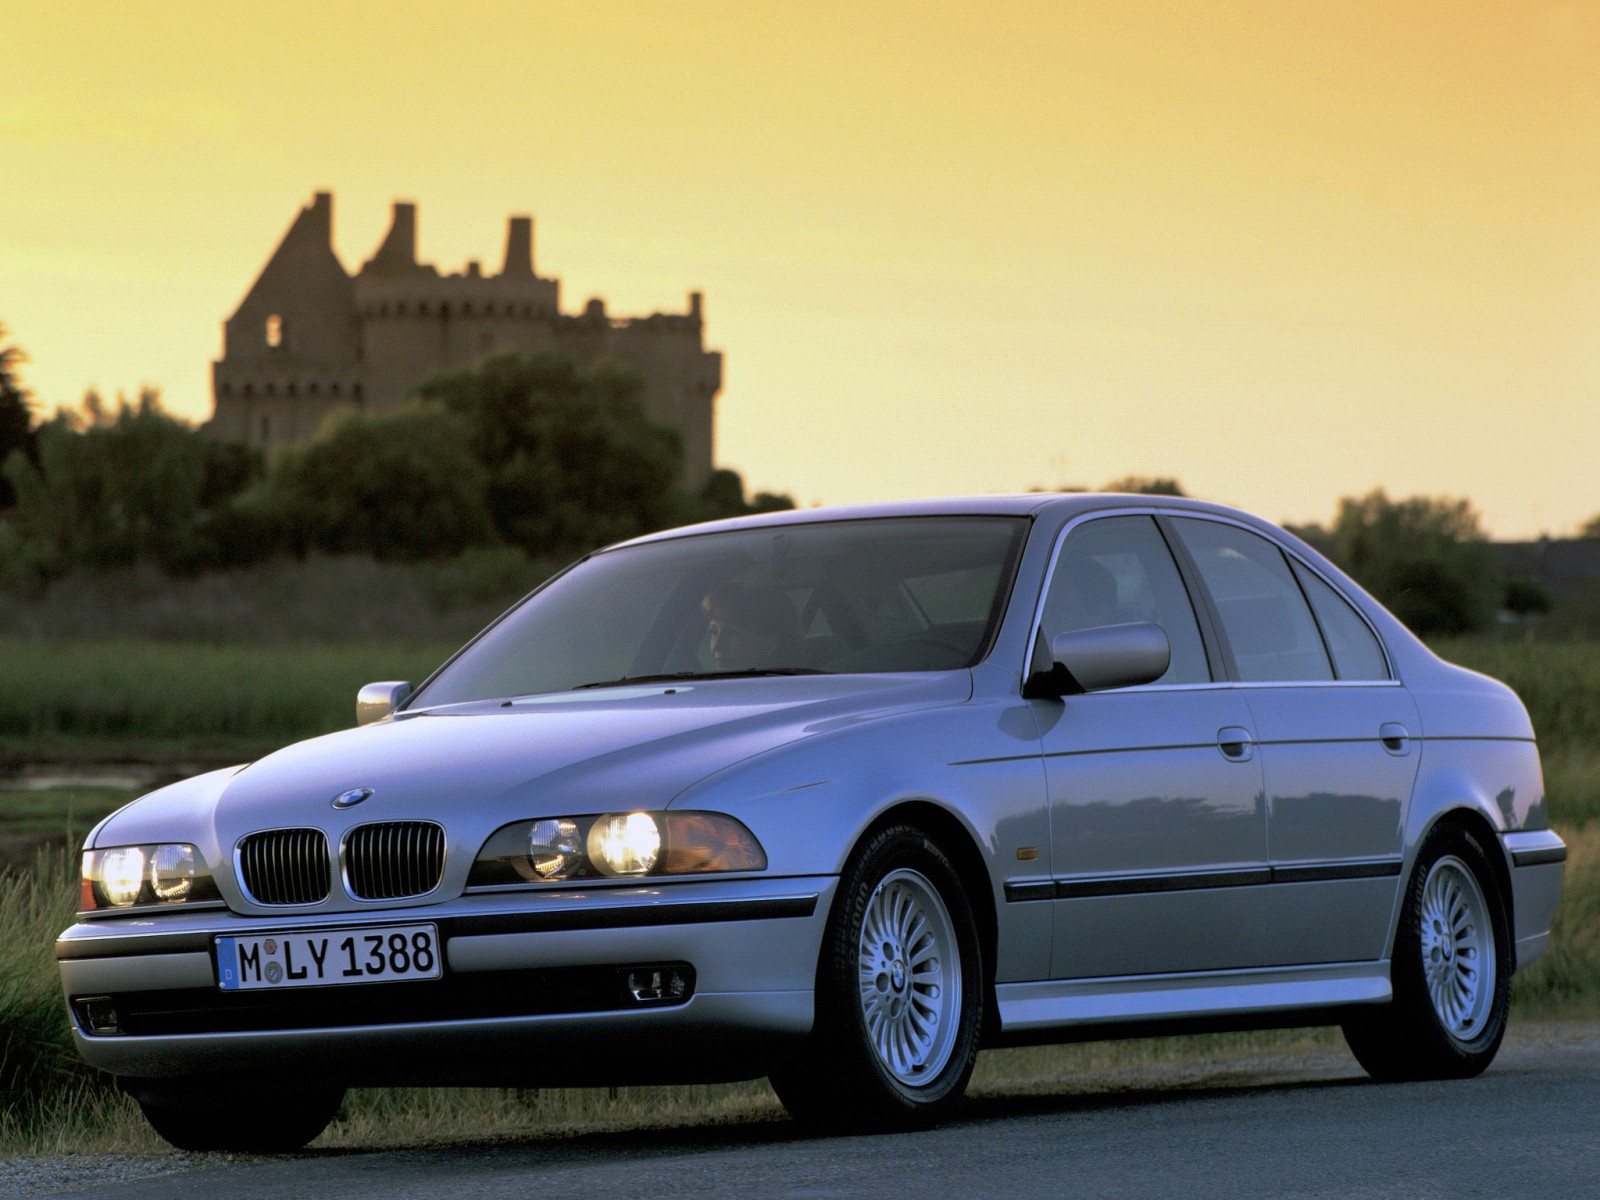 BMW Seria 5 E 39 , produsa intre 1996 si 2004, s-a vandut in aproape 1,47 milioane de unitati